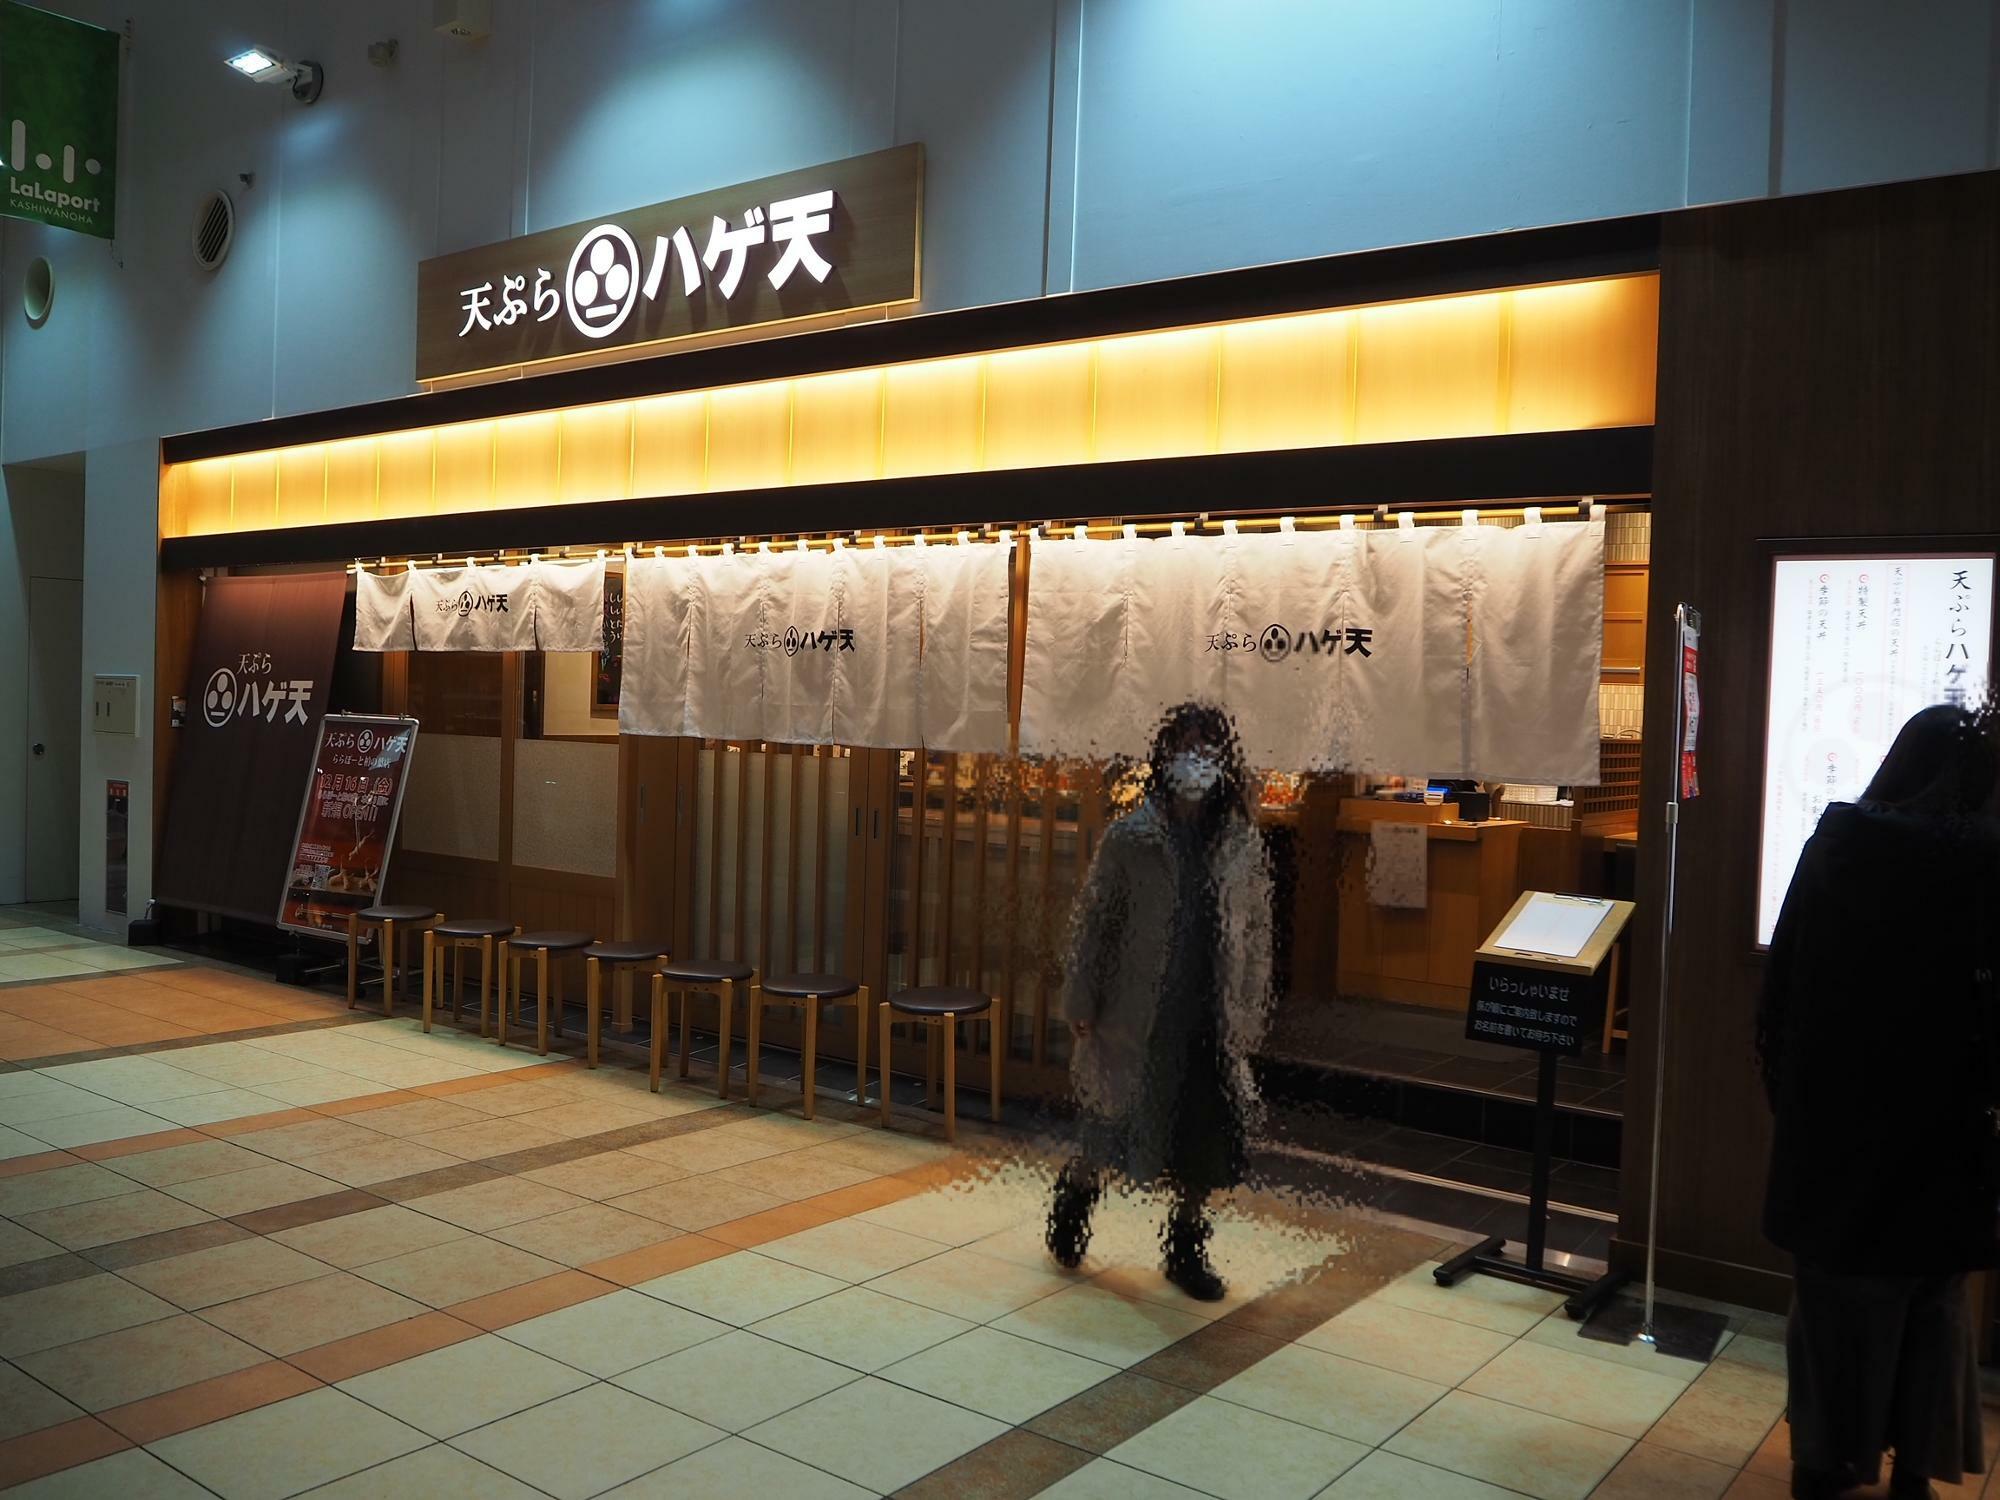 天ぷら専門店「天ぷら ハゲ天 ららぽーと柏の葉店」